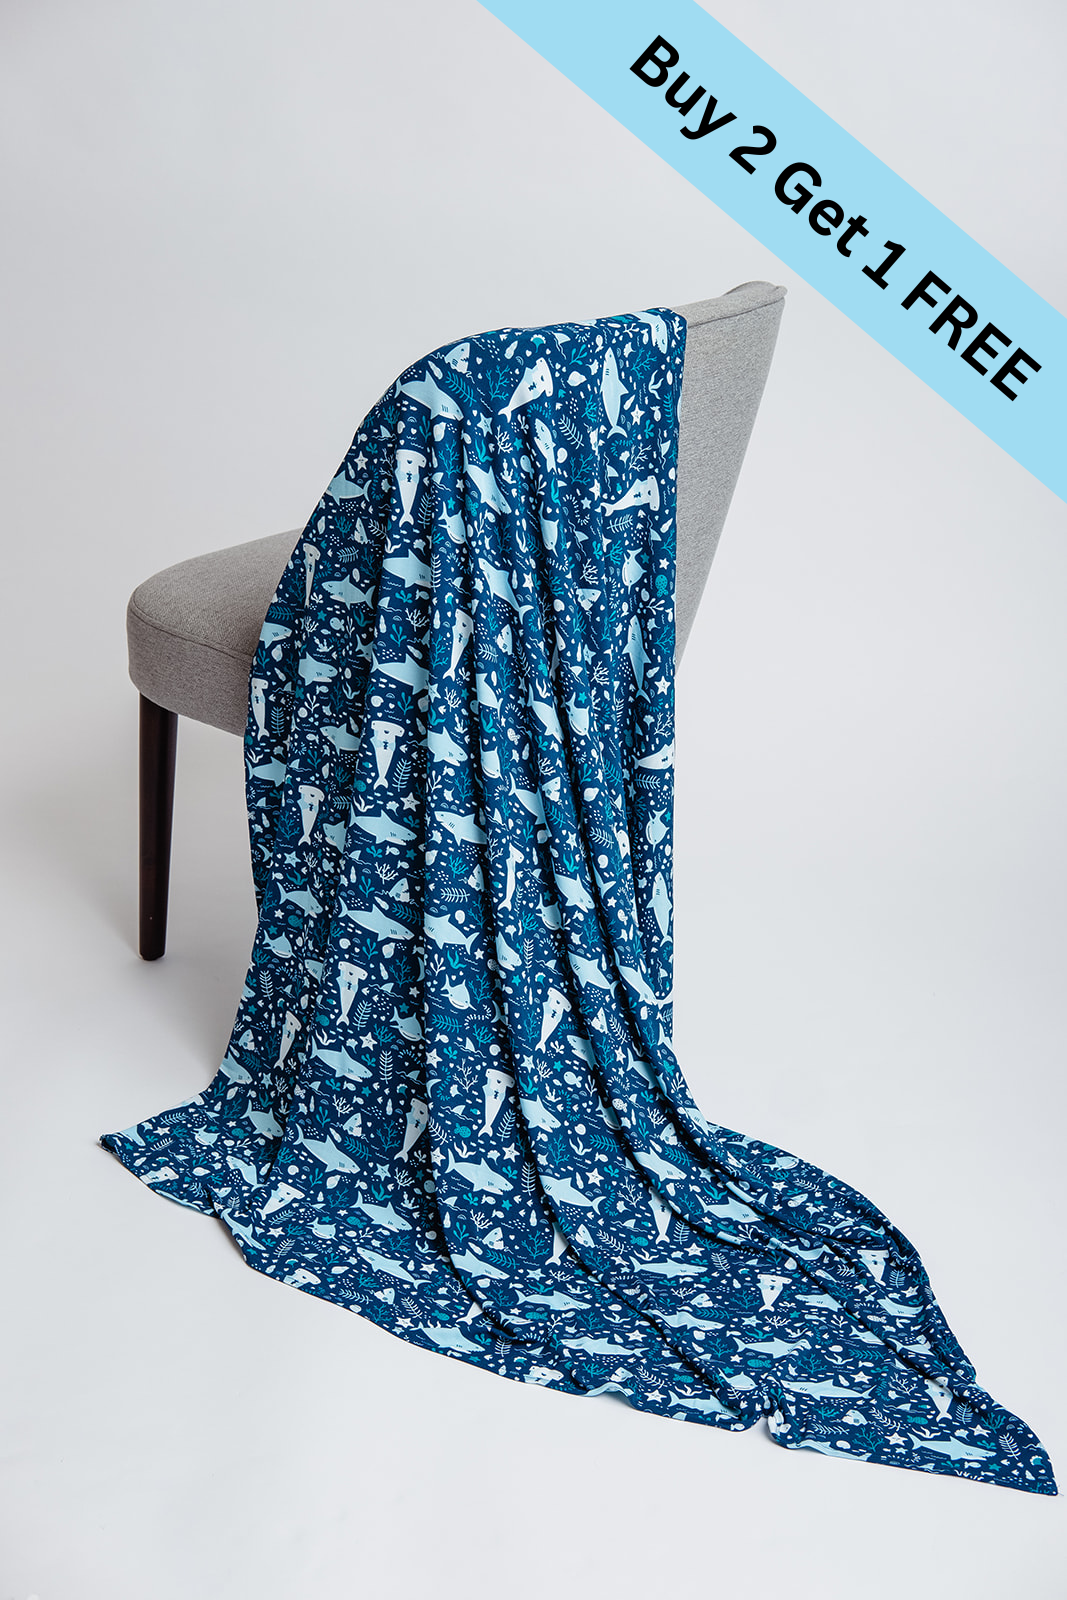 Blue Sharks Swaddle Blanket